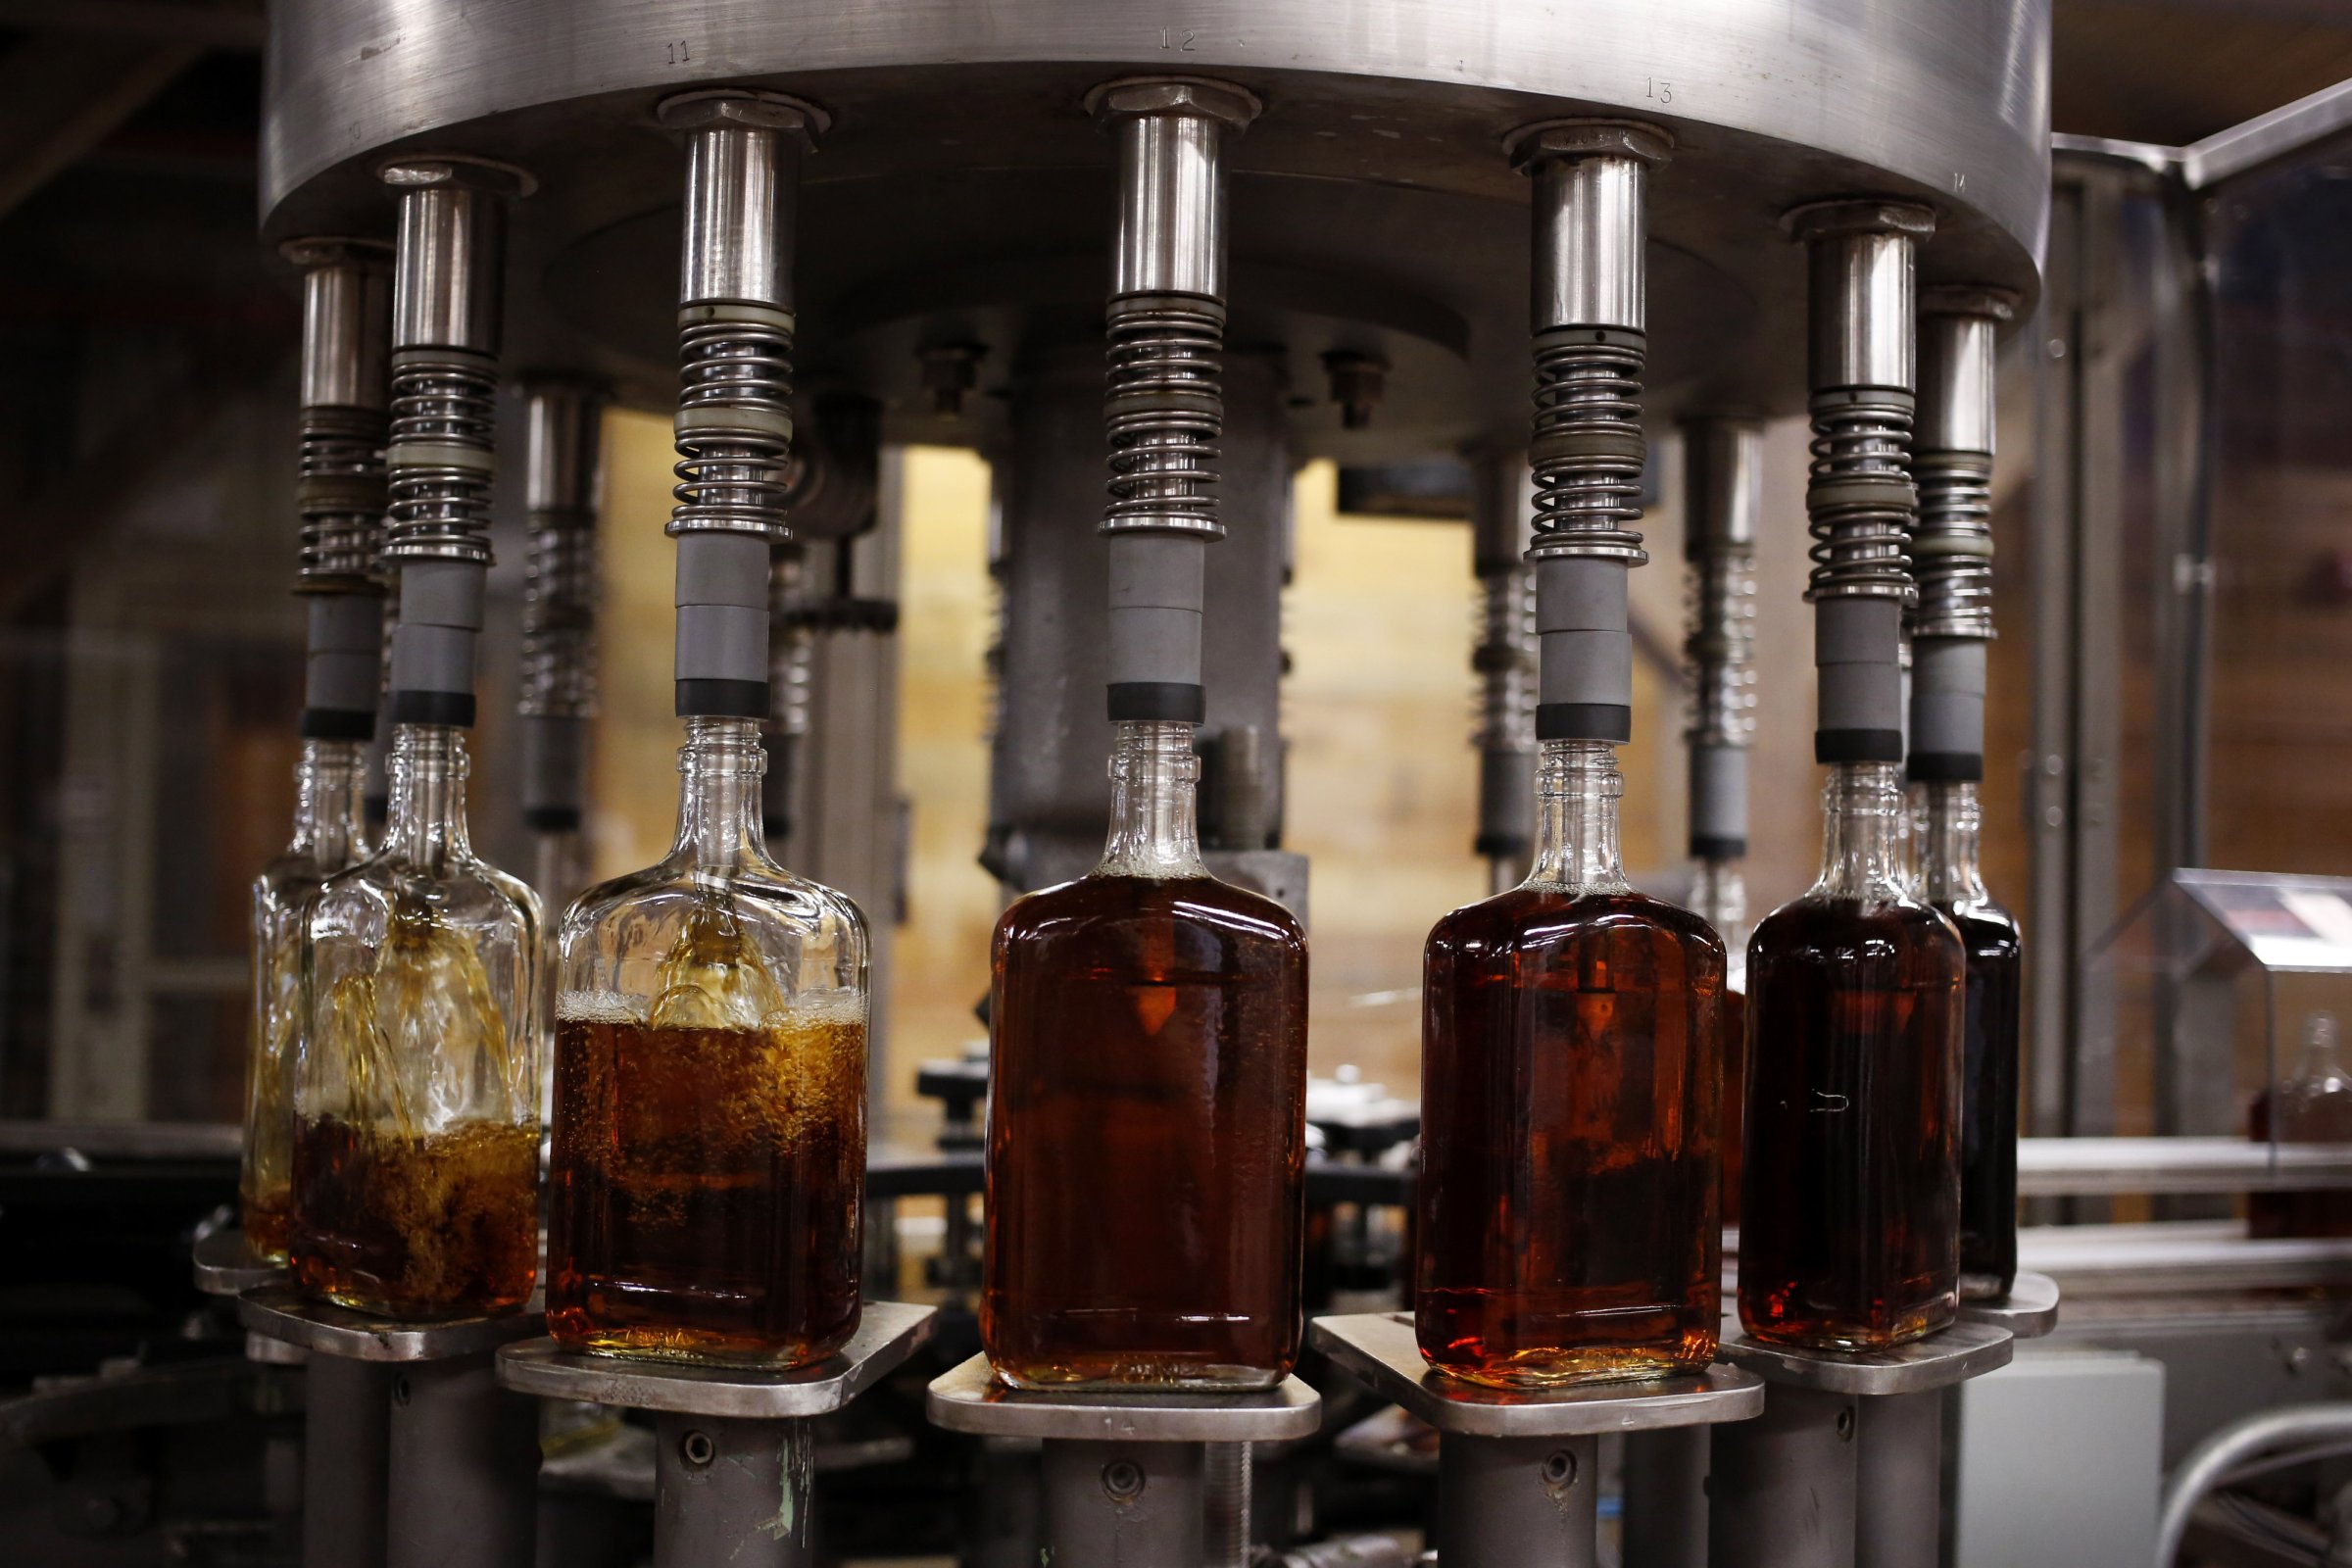 Bottles of single barrel bourbon are filled on a bottling line